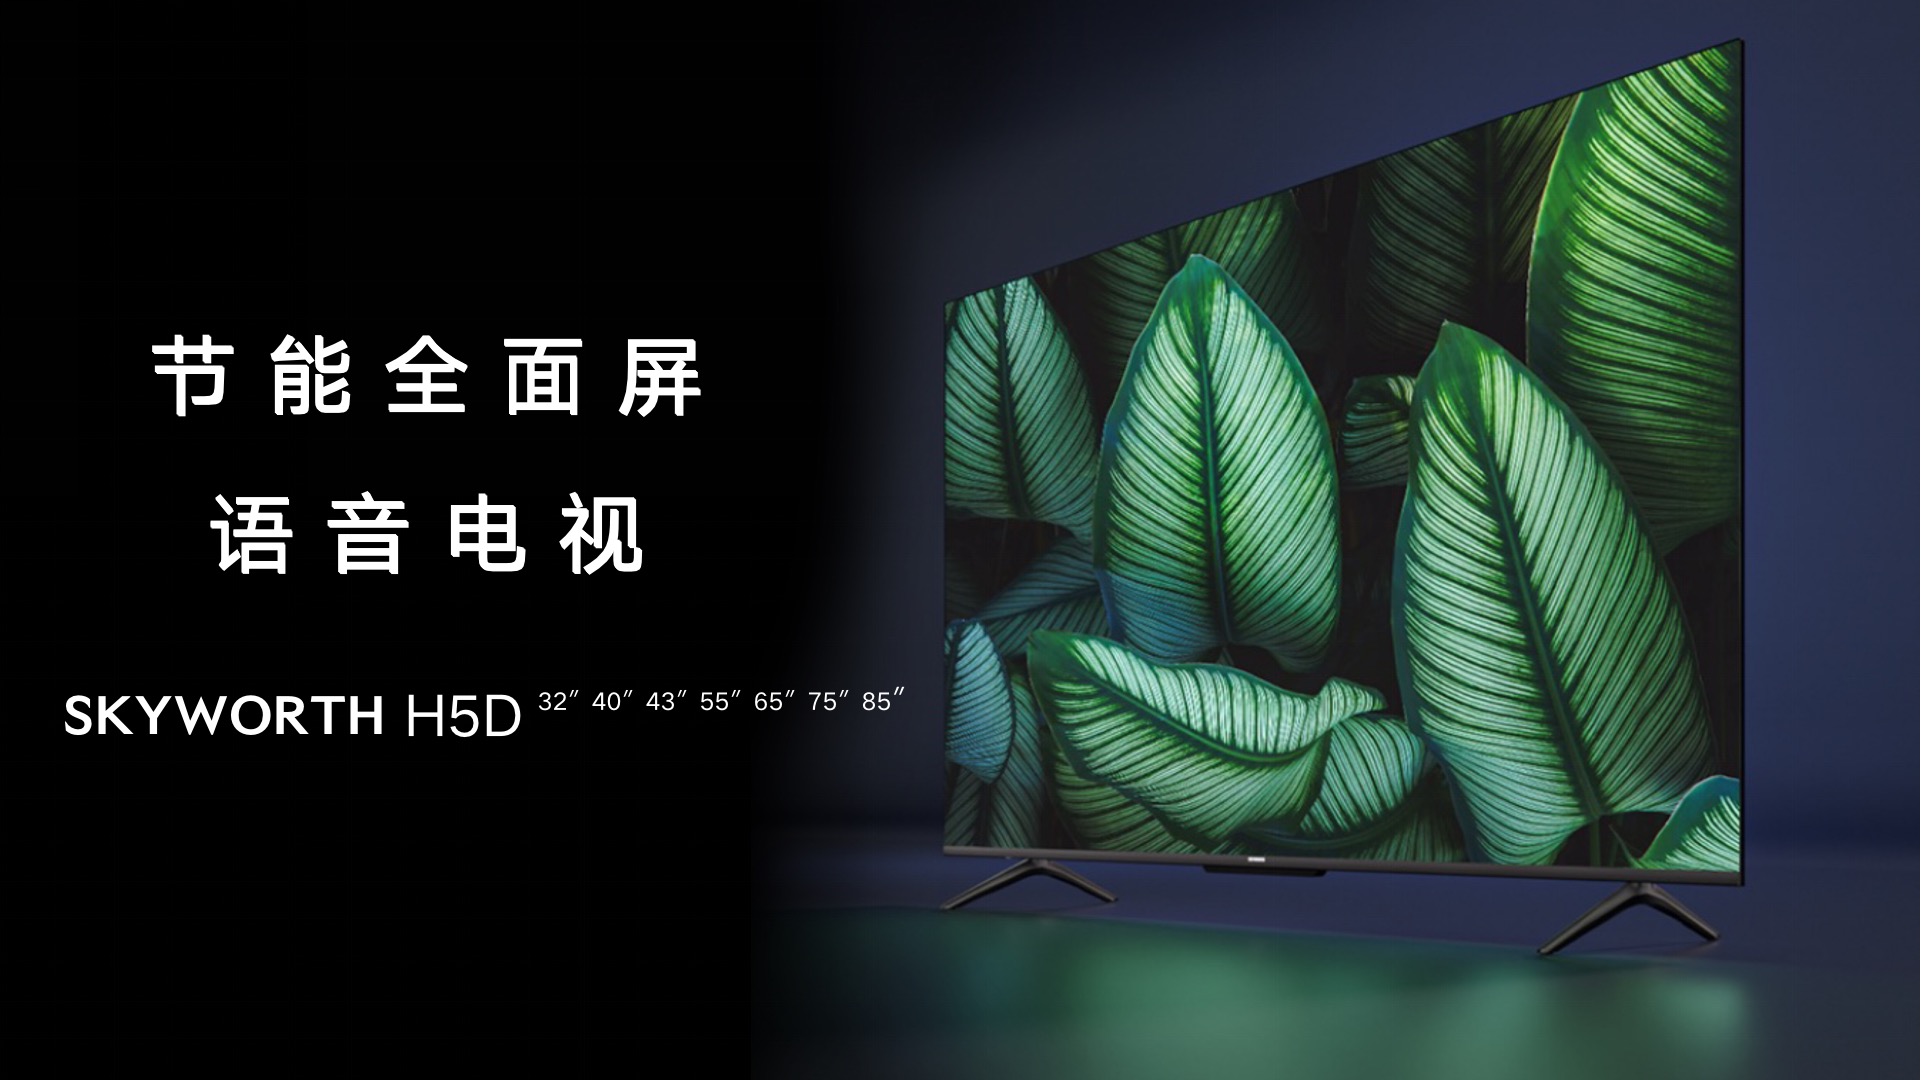 创维电视新品H5D：霸榜京东智能大屏榜 为彩电行业指明方向 智能公会